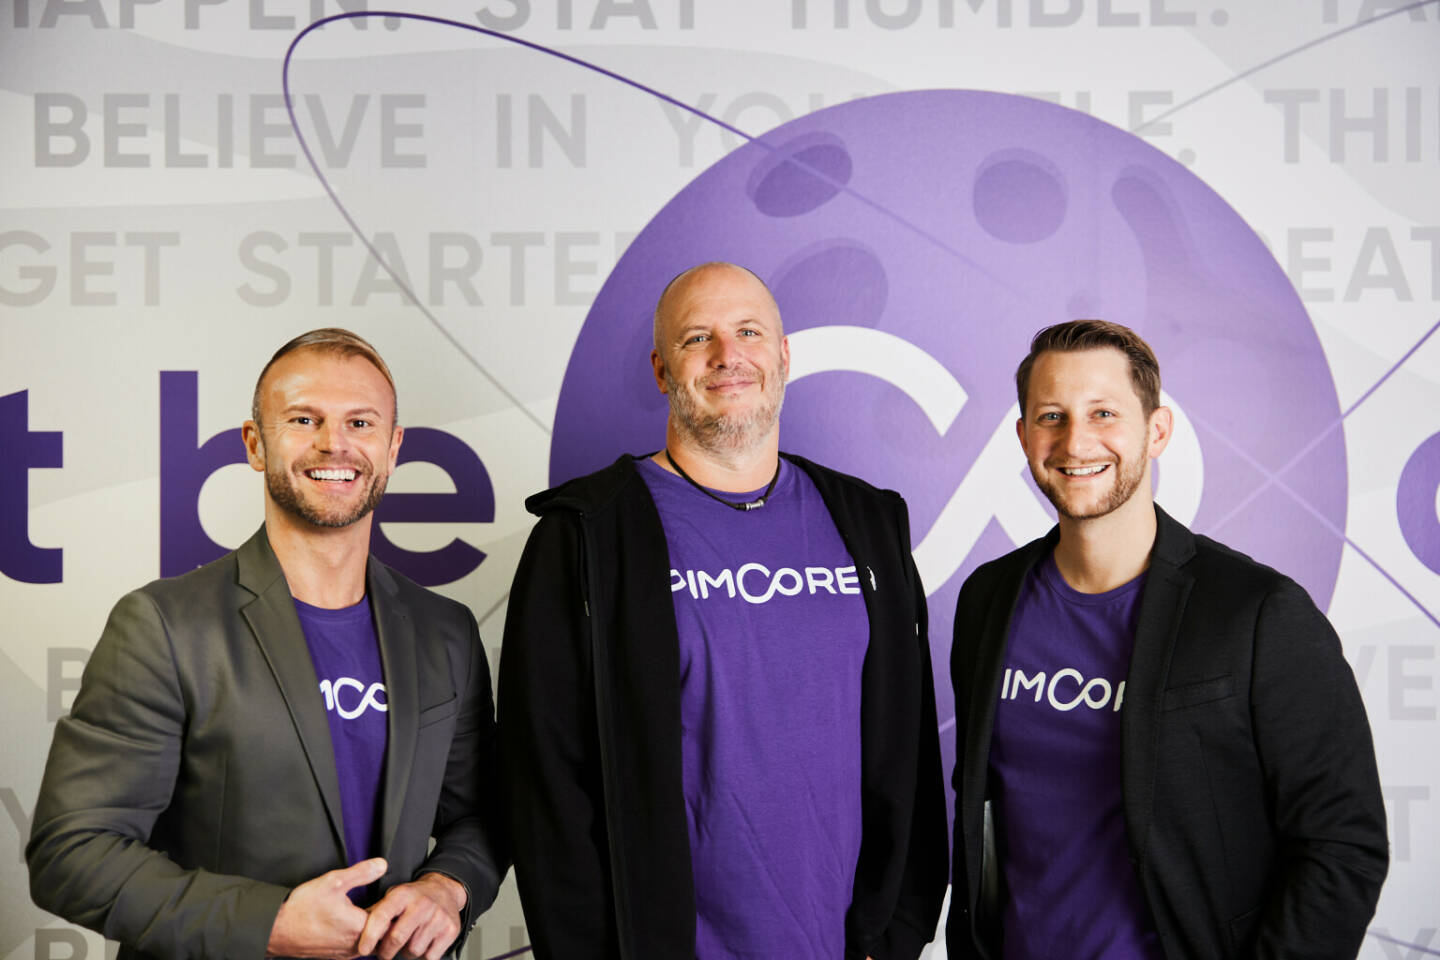 Pimcore GmbH: Pimcore erhält Serie-B-Deal über 12 Millionen Dollar durch Nordwind Growth für die internationale Expansion, im Bild: v.l.n.r.: Stefan Gruber (CSO), Dietmar Rietsch (CEO), Klaus Schobesberger (COO); Credit: Pimcore